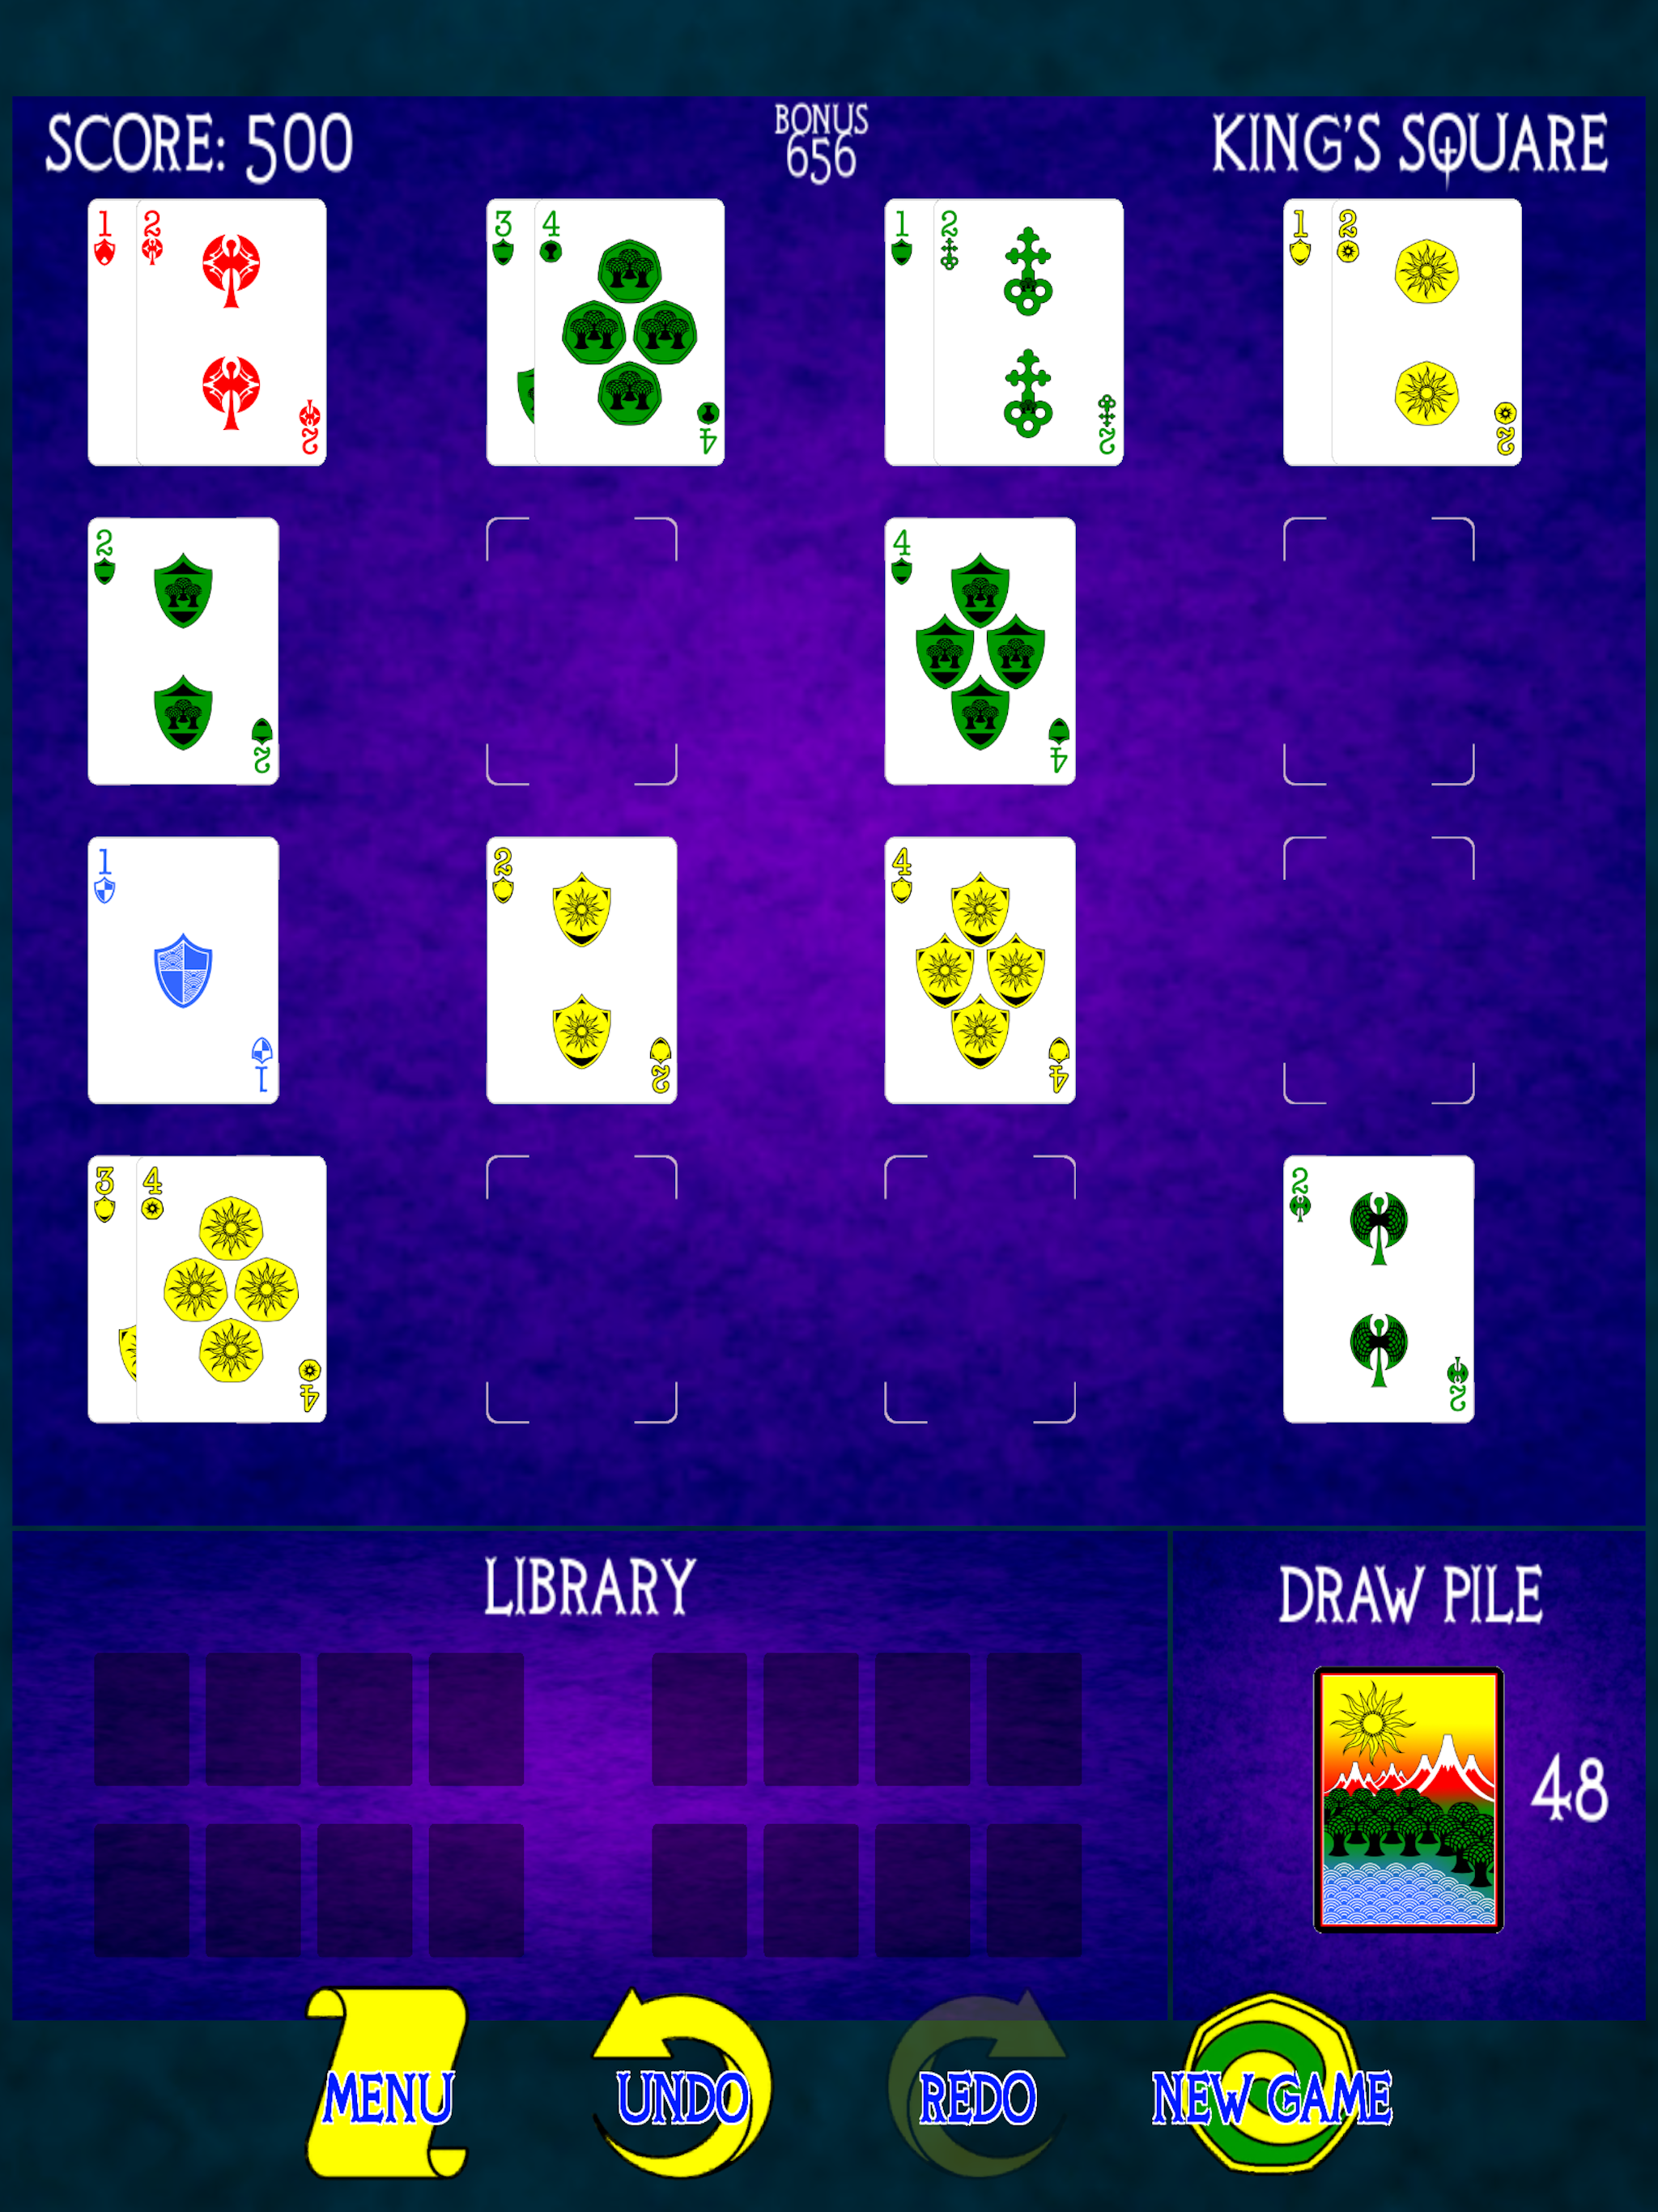 King's Square screenshot game